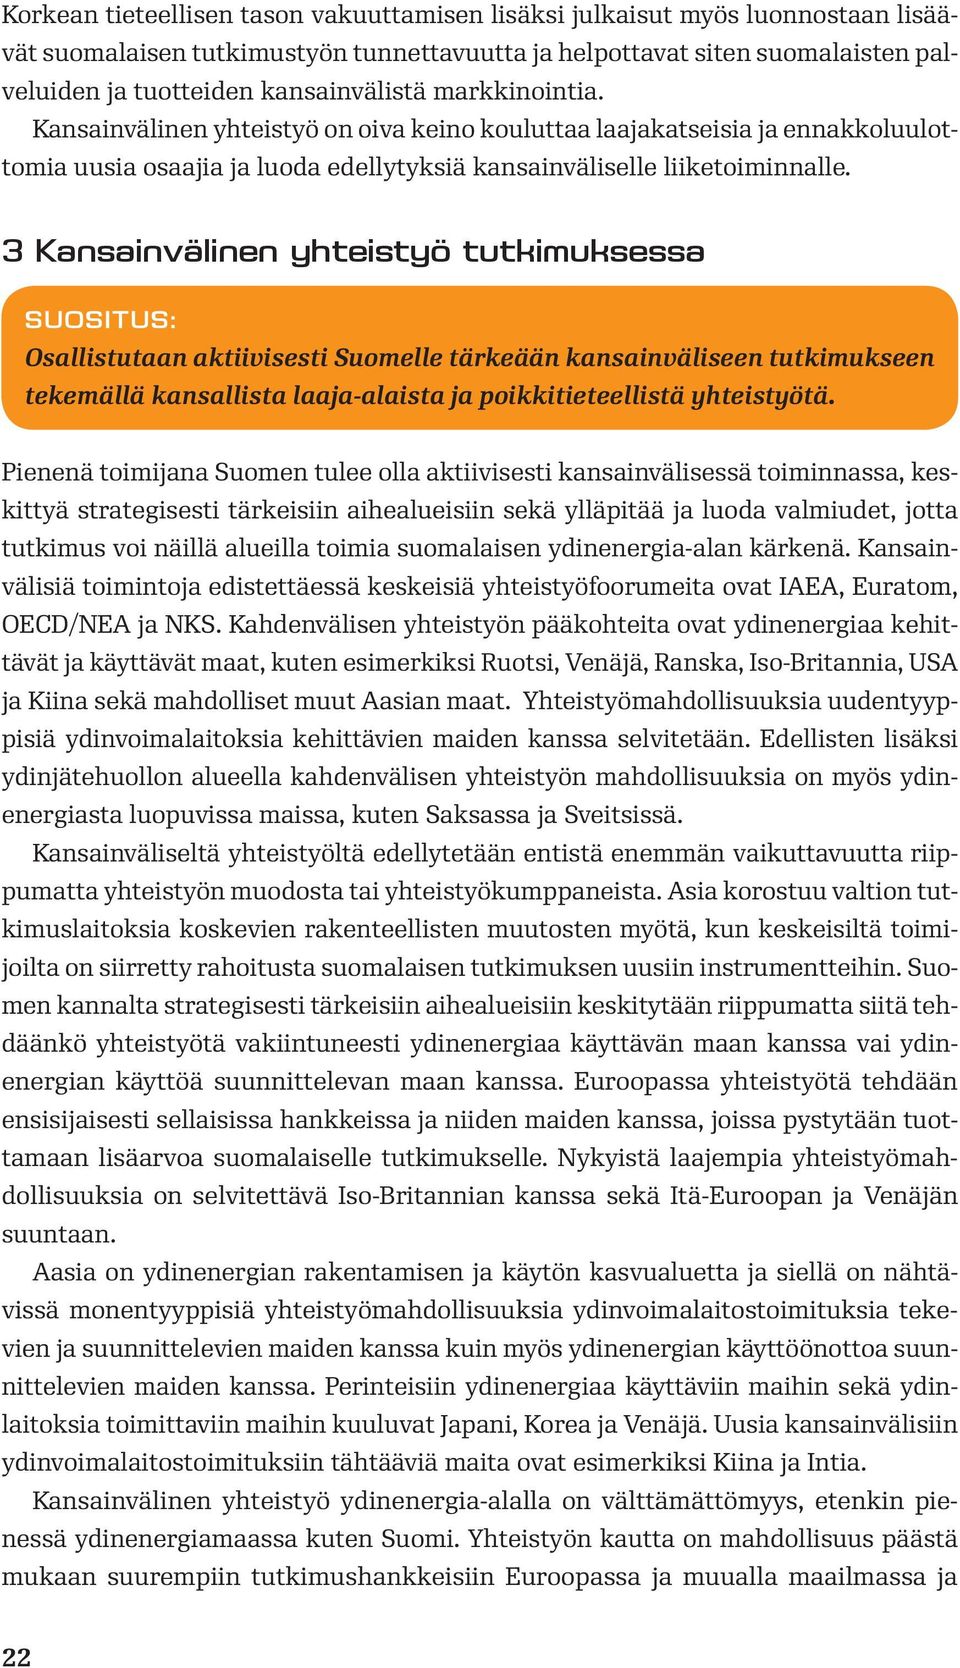 3 Kansainvälinen yhteistyö tutkimuksessa SUOSITUS: Osallistutaan aktiivisesti Suomelle tärkeään kansainväliseen tutkimukseen tekemällä kansallista laaja-alaista ja poikkitieteellistä yhteistyötä.